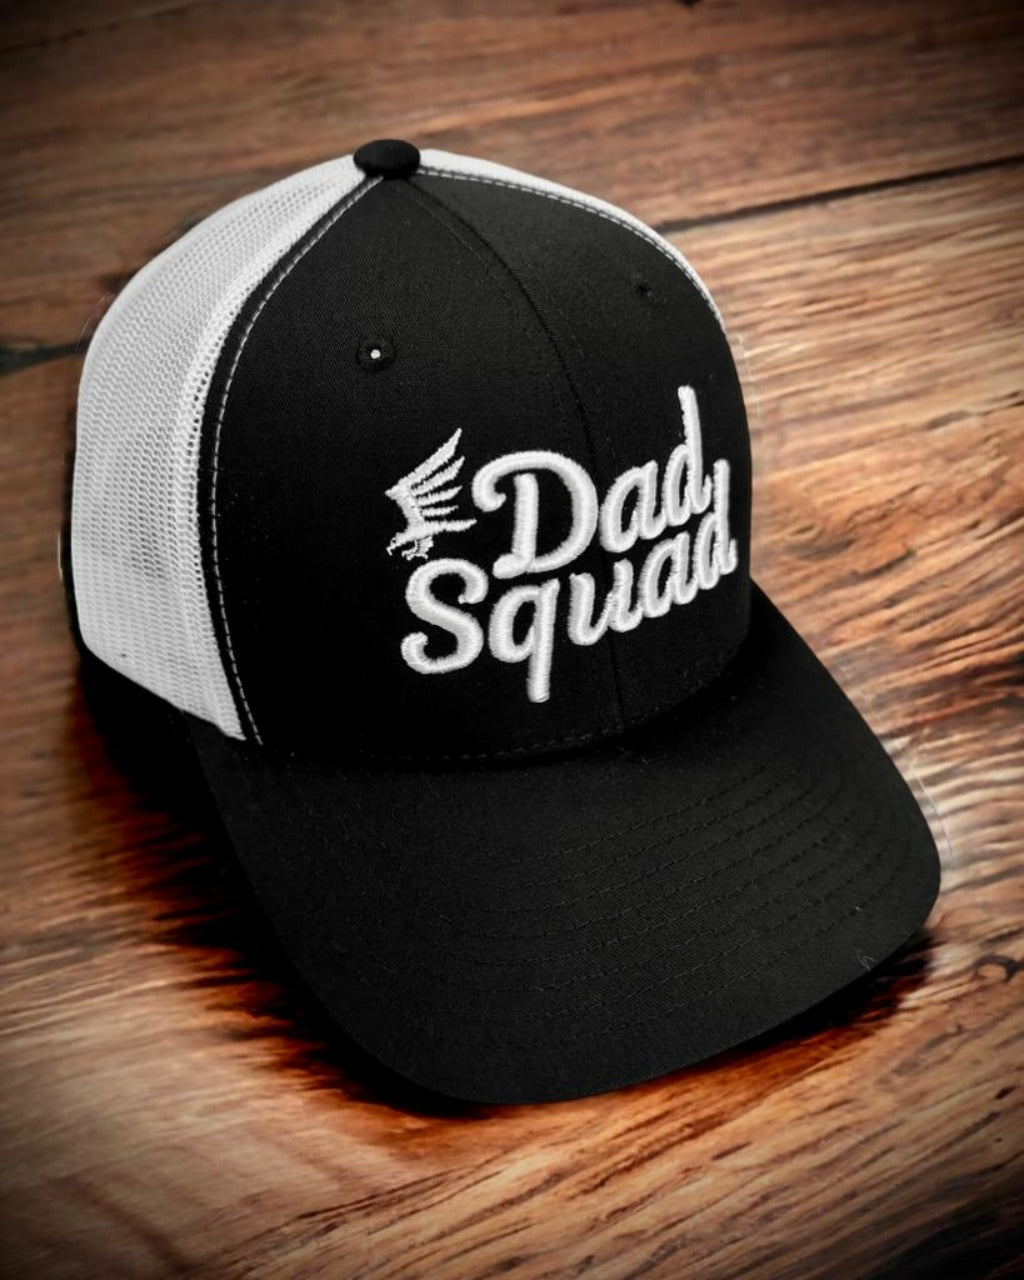 Dad Squad Trucker Hat - Black/White